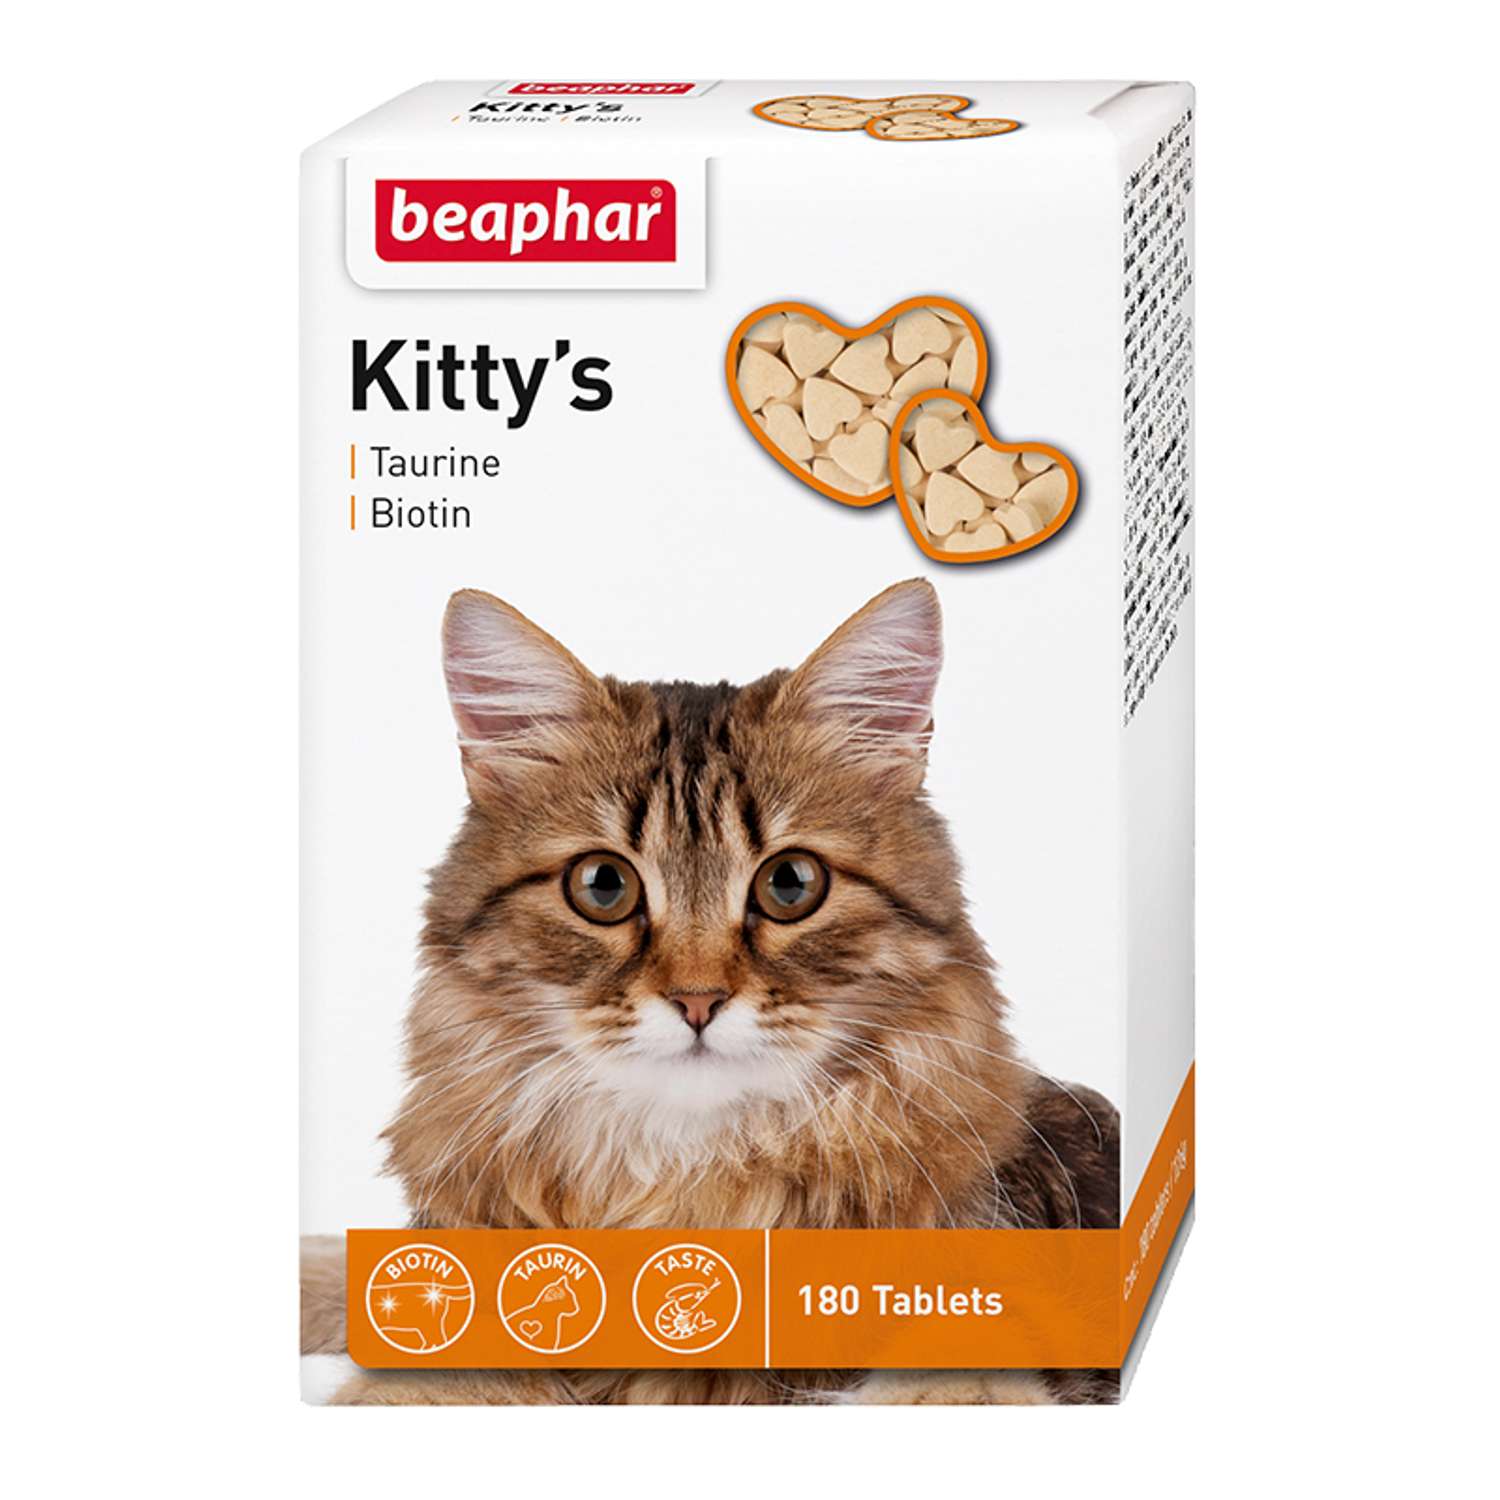 Витамины для кошек Beaphar Kittys Biotin таурин-биотин при недостатке витаминов 180таблеток - фото 1